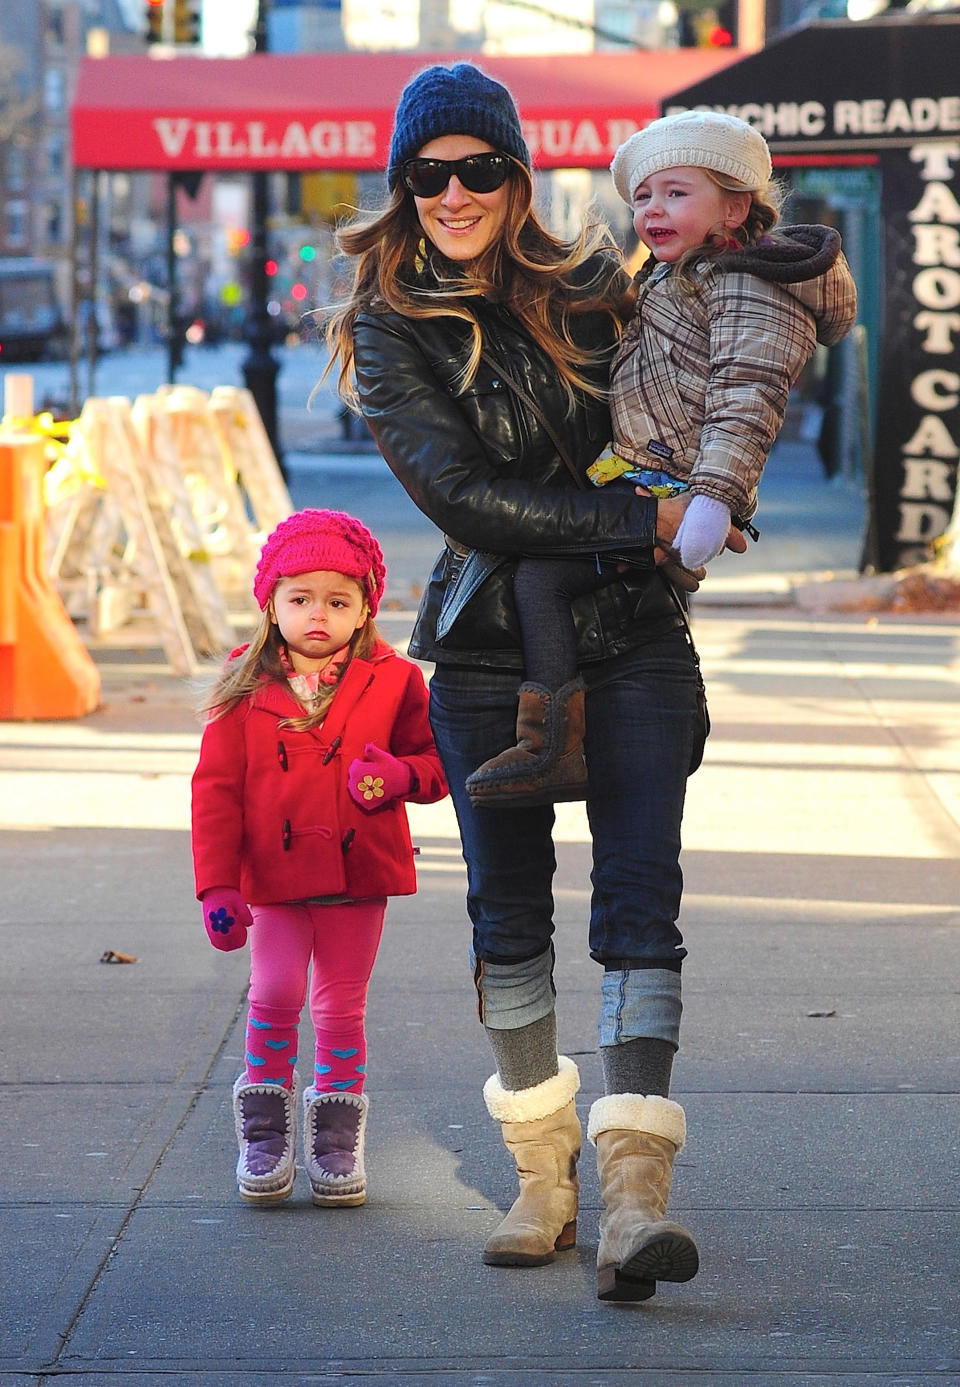 <p>Nos encantan estos estilismos invernales que lucieron para pasear por Manhattan. "Si mis hijas me ven vestirme, siempre tienen sus propias opiniones sobre lo que llevo puesto", relató la estadounidense a ET. (Foto: Alo Ceballos / Getty Images)</p> 